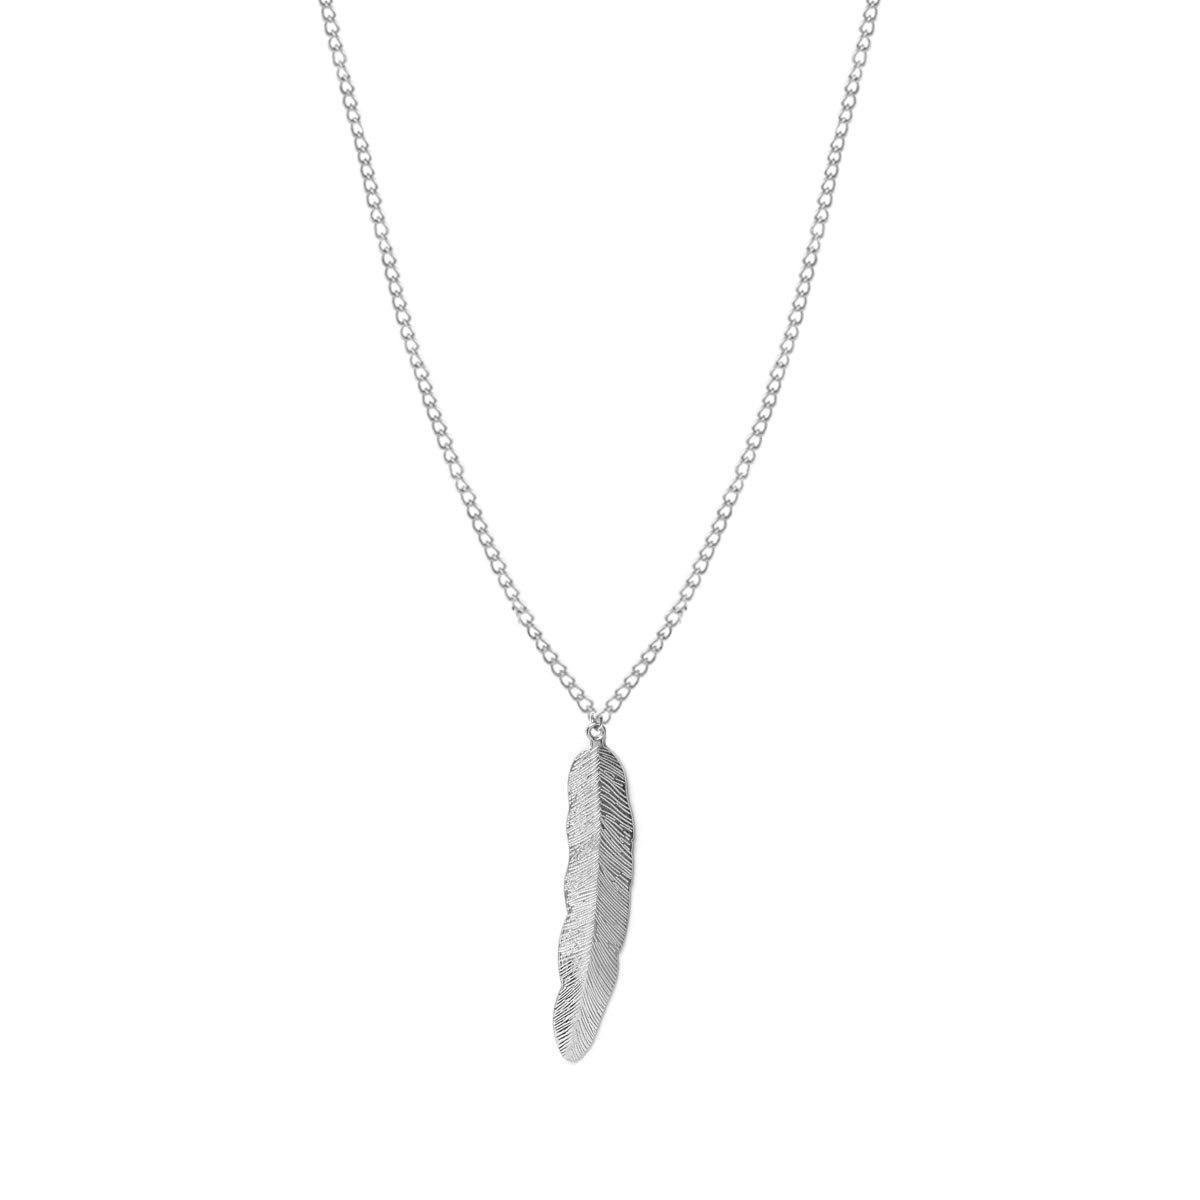 24/7 Jewelry Collection Veer Ketting - Dames - Bijou Legering Zilverkleurig - 60 cm - Amodi